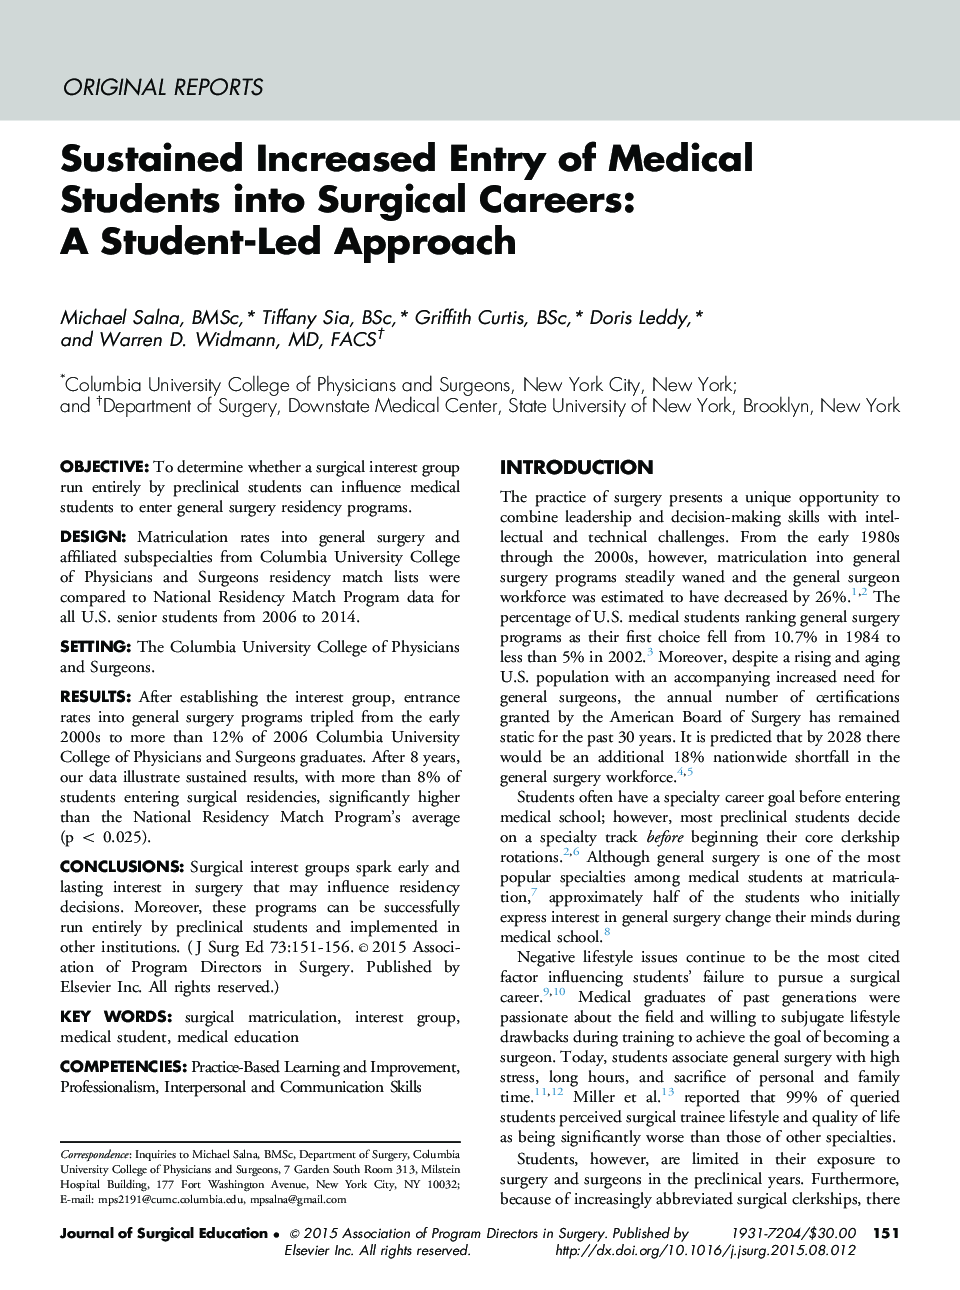 افزایش پایدار دانشجویان پزشکی در شغل های جراحی: رویکرد دانشجویی 